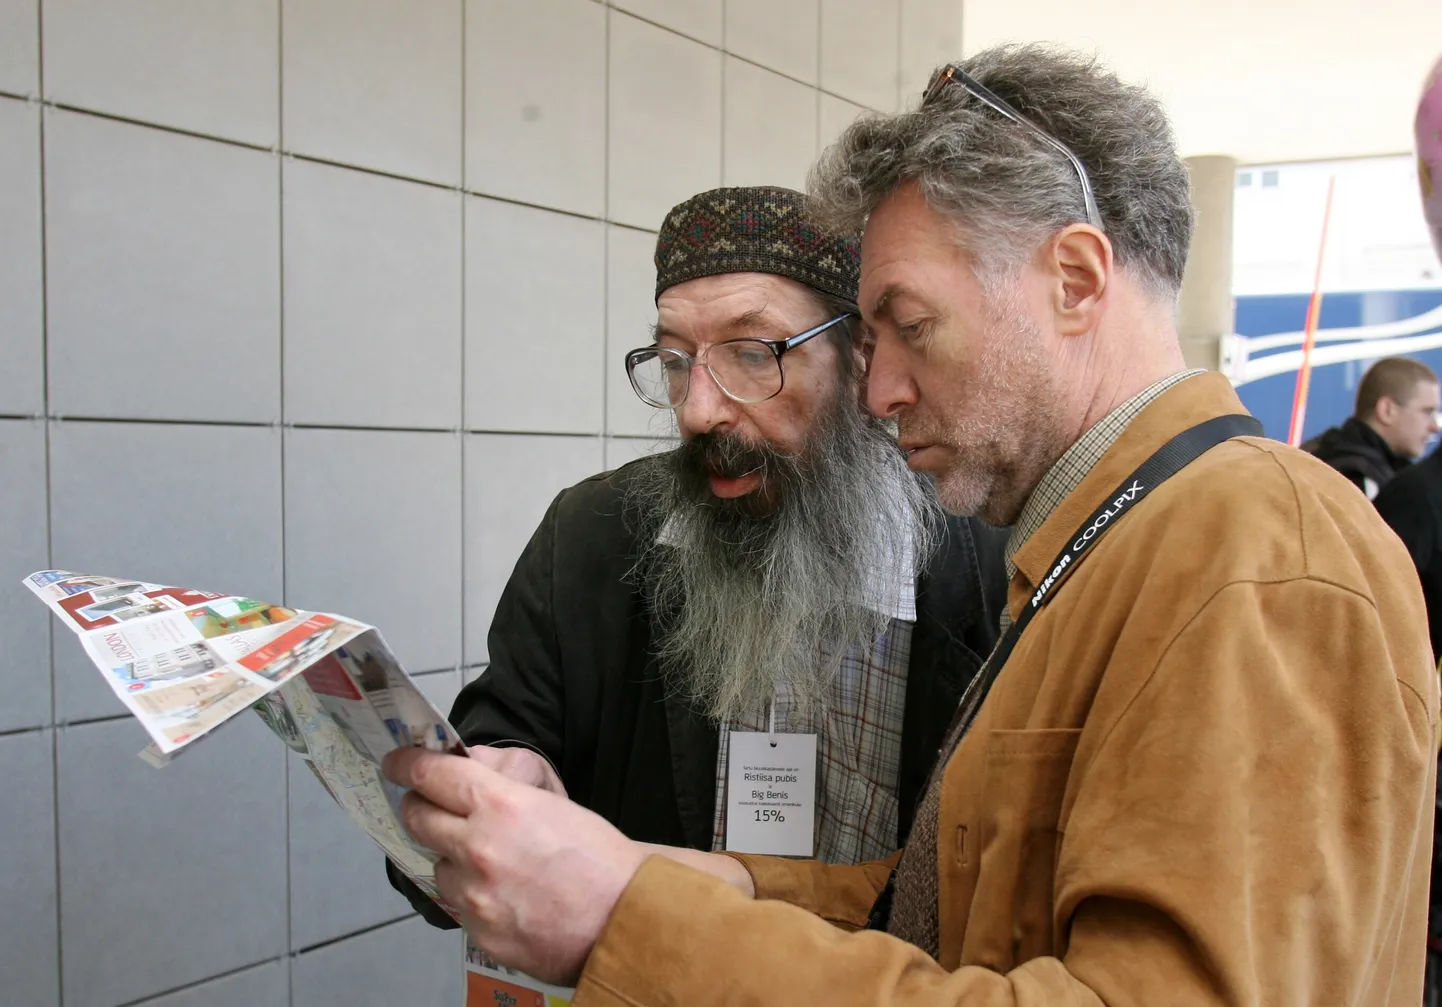 Peeter Volkonski ja Artemi Troitski uurivad reklaamvoldikut, mille keskele on trükitud Tartu linna kaart. Pilt on tehtud Vanemuise kontserdimaja ees Tartu muusikapäevade 30. aastapäeva tähistamise ajal 1. mail 2009.